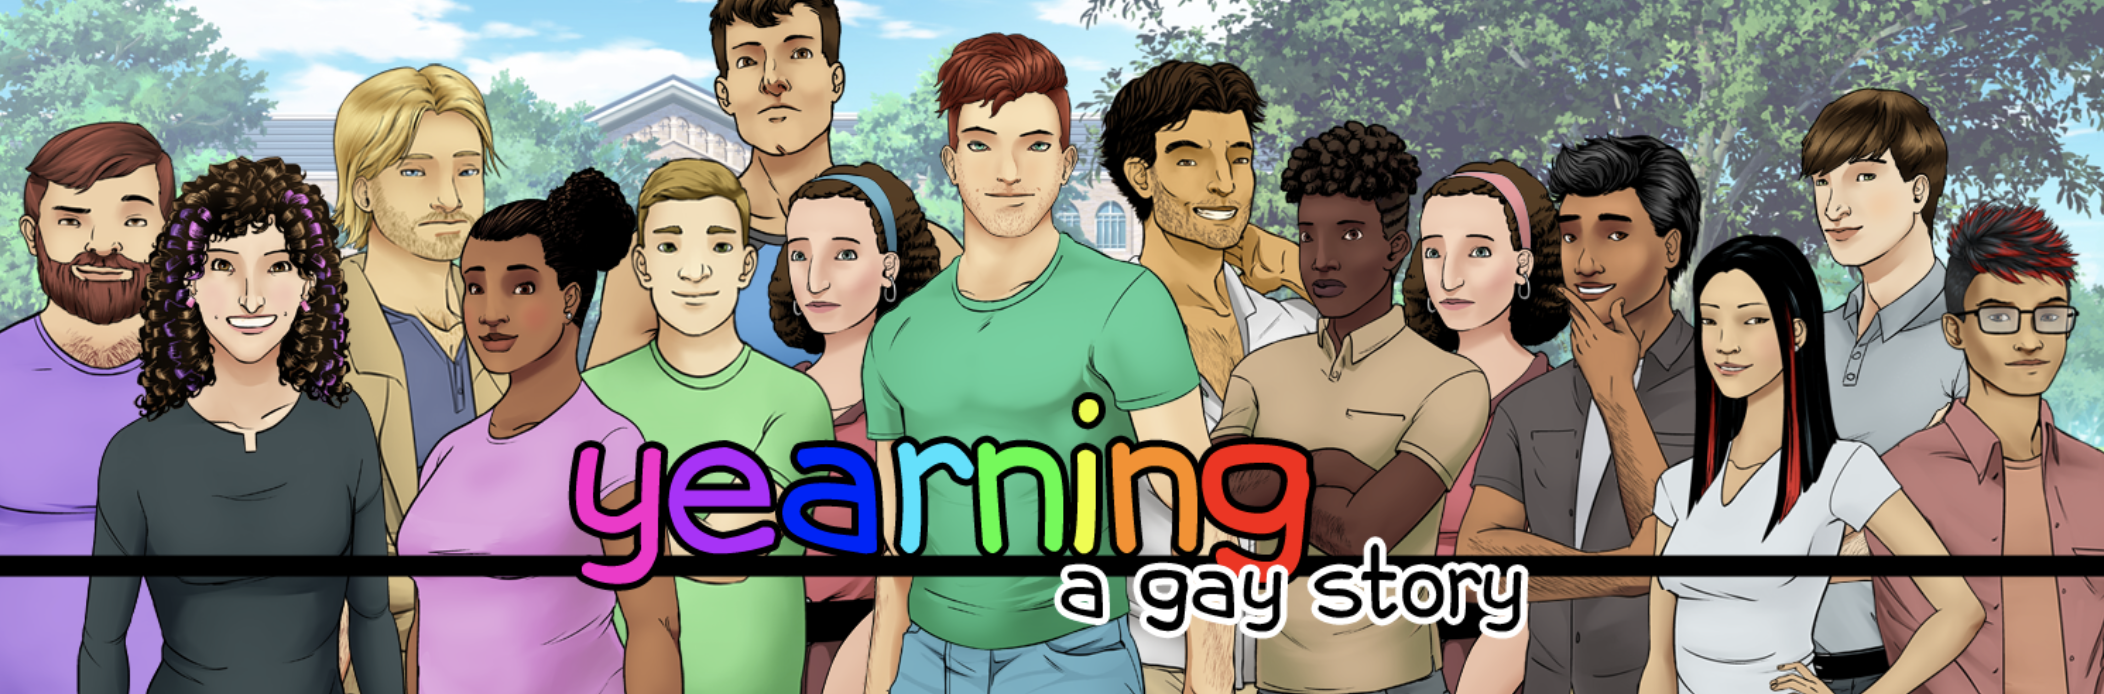 Yearning a gay story visual novel